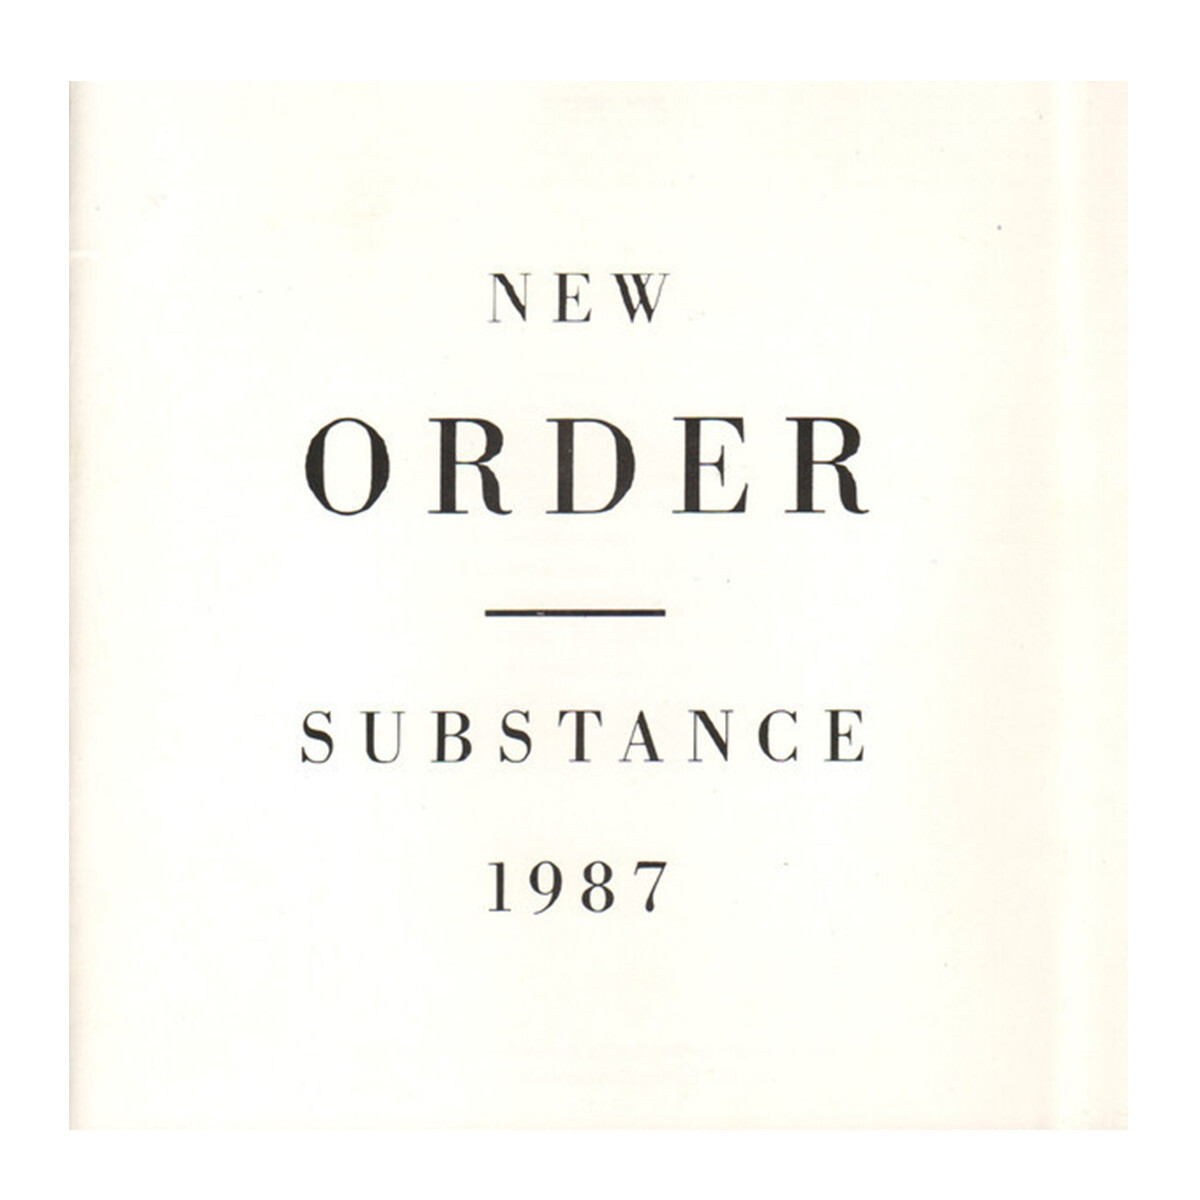 New Order - Substance - Vinilo 